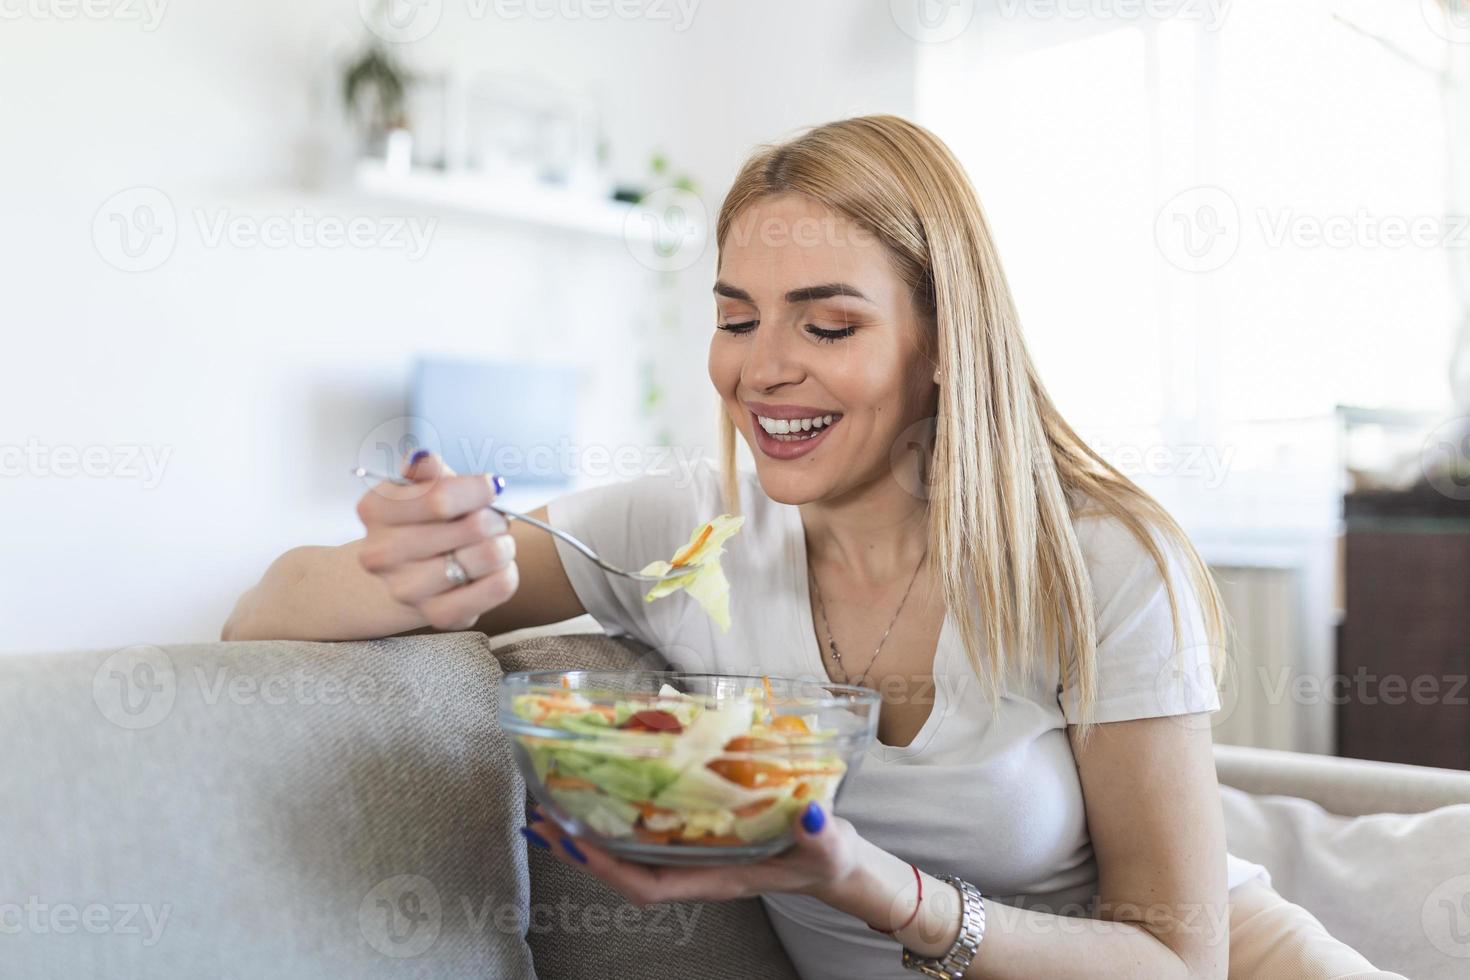 gesunder Lebensstil Frau, die Salat isst und an einem schönen Tag im Freien glücklich lächelt. Junge Frau, die gesundes Essen isst, lacht und entspannt sich auf dem Sofa. foto